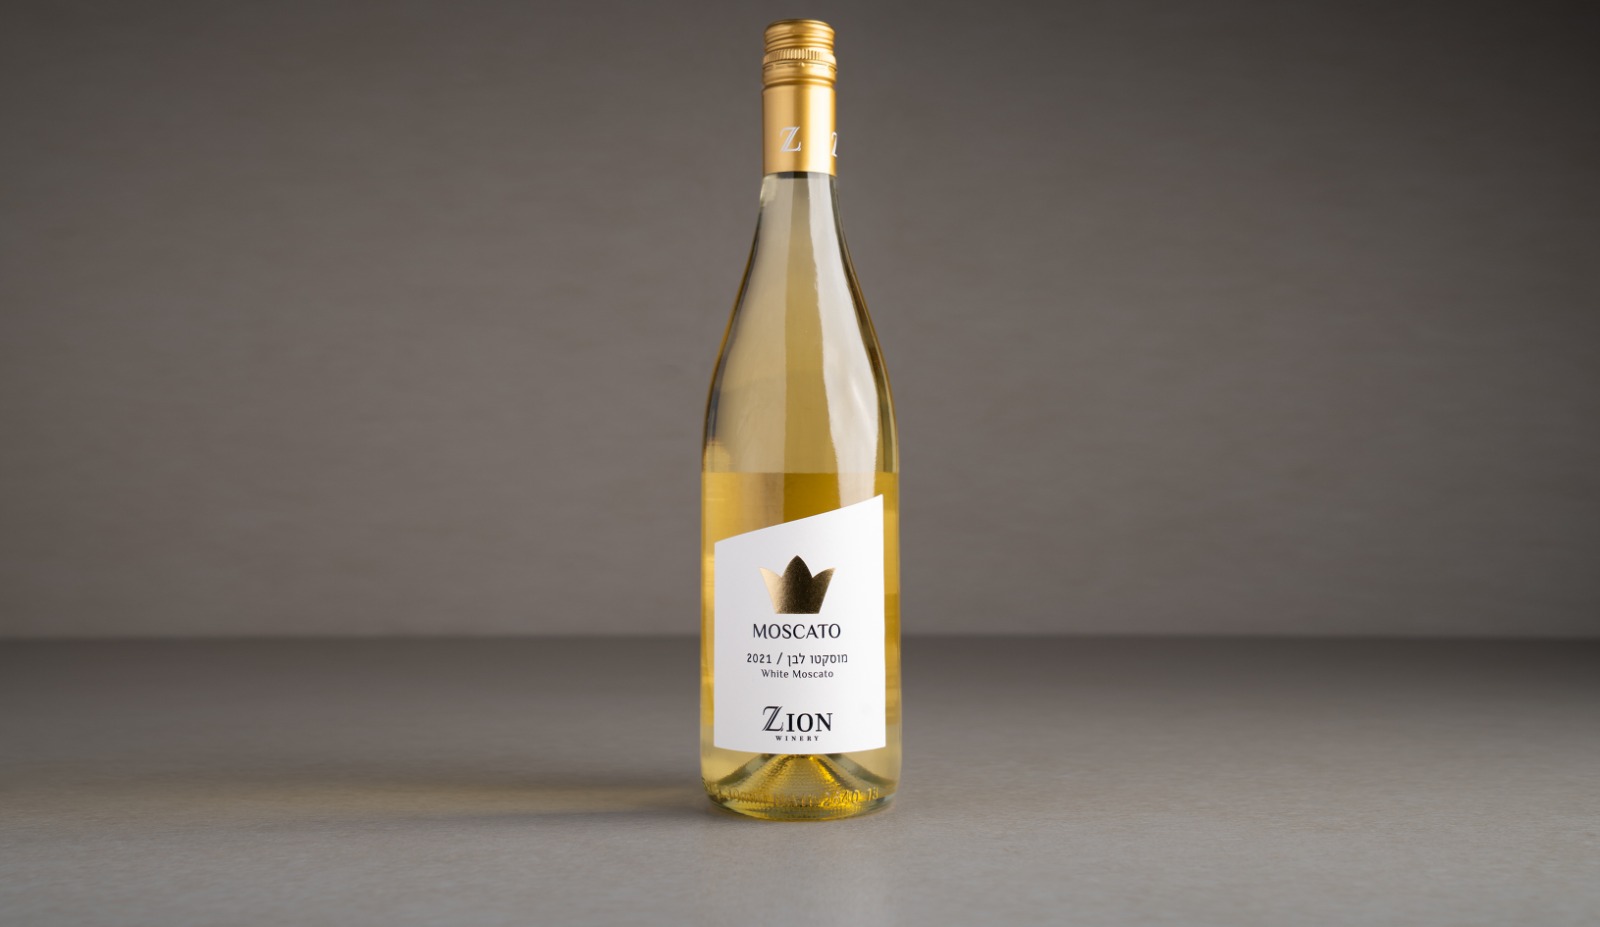 יין מוסקטו לבן מבעבע "ציון" 2021